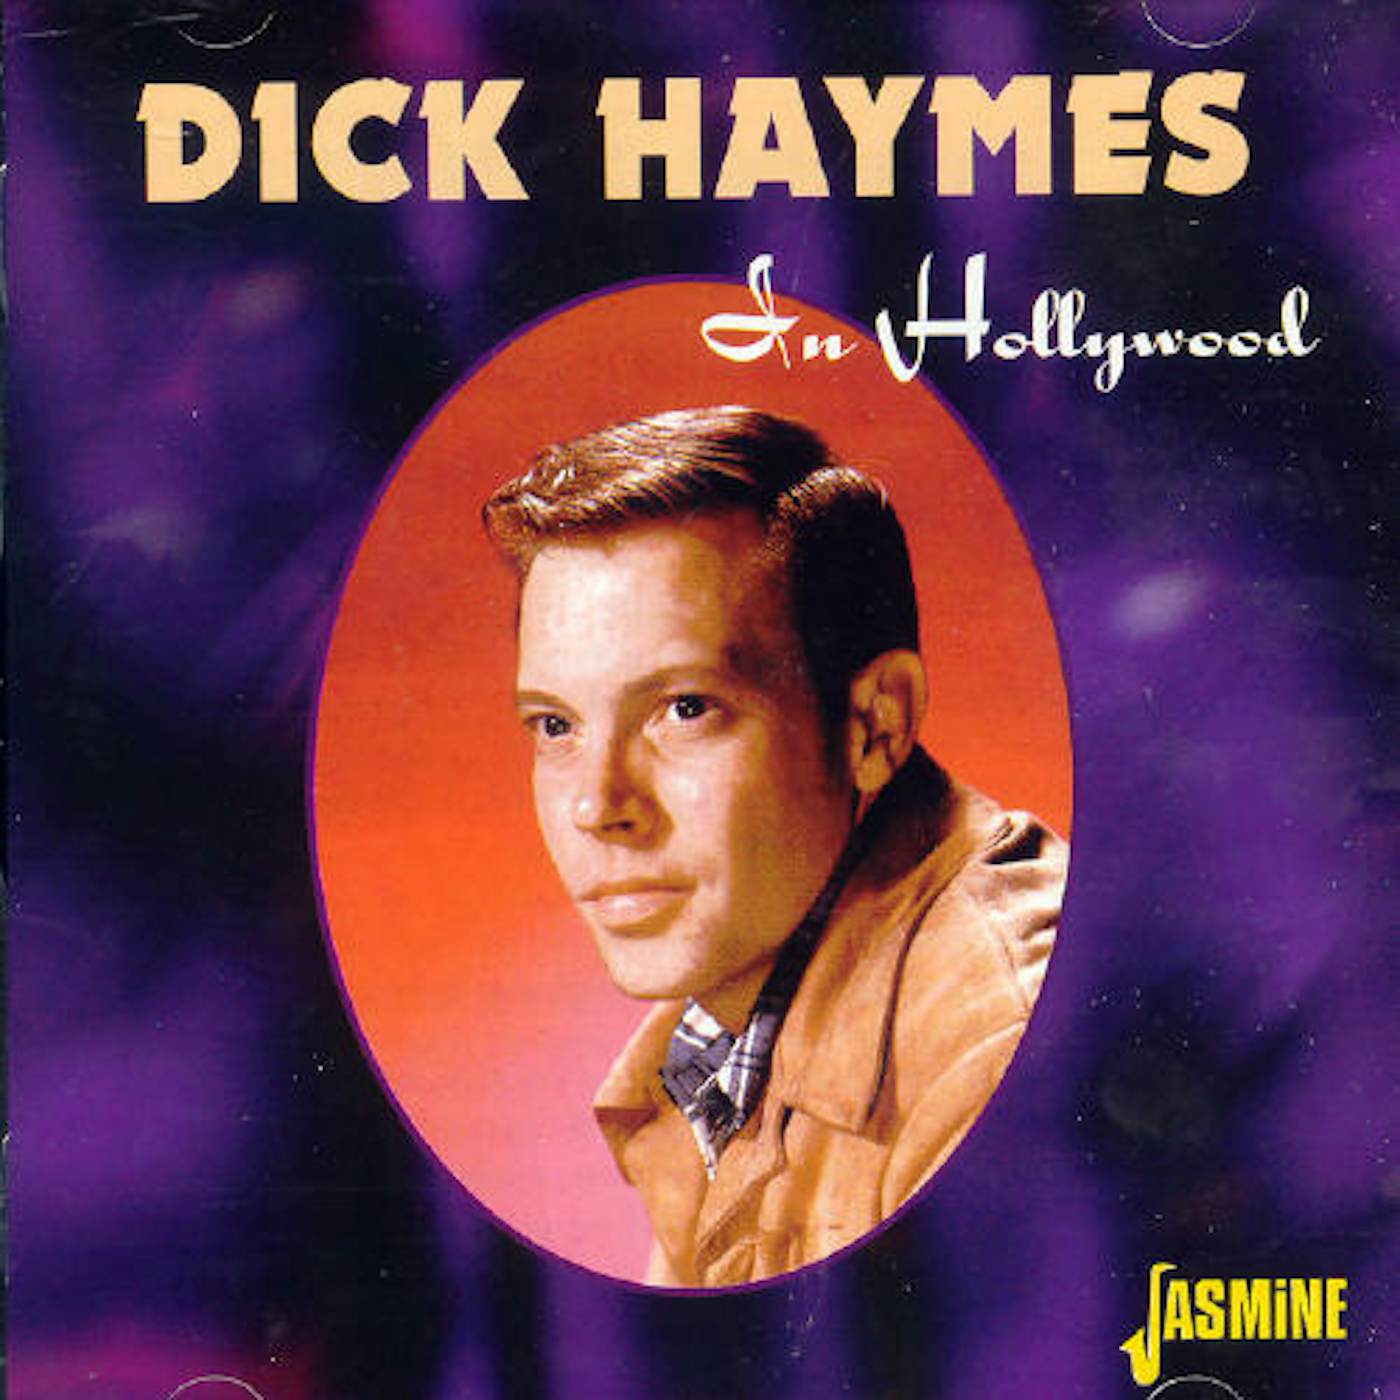 Dick Haymes IN HOLLYWOOD CD